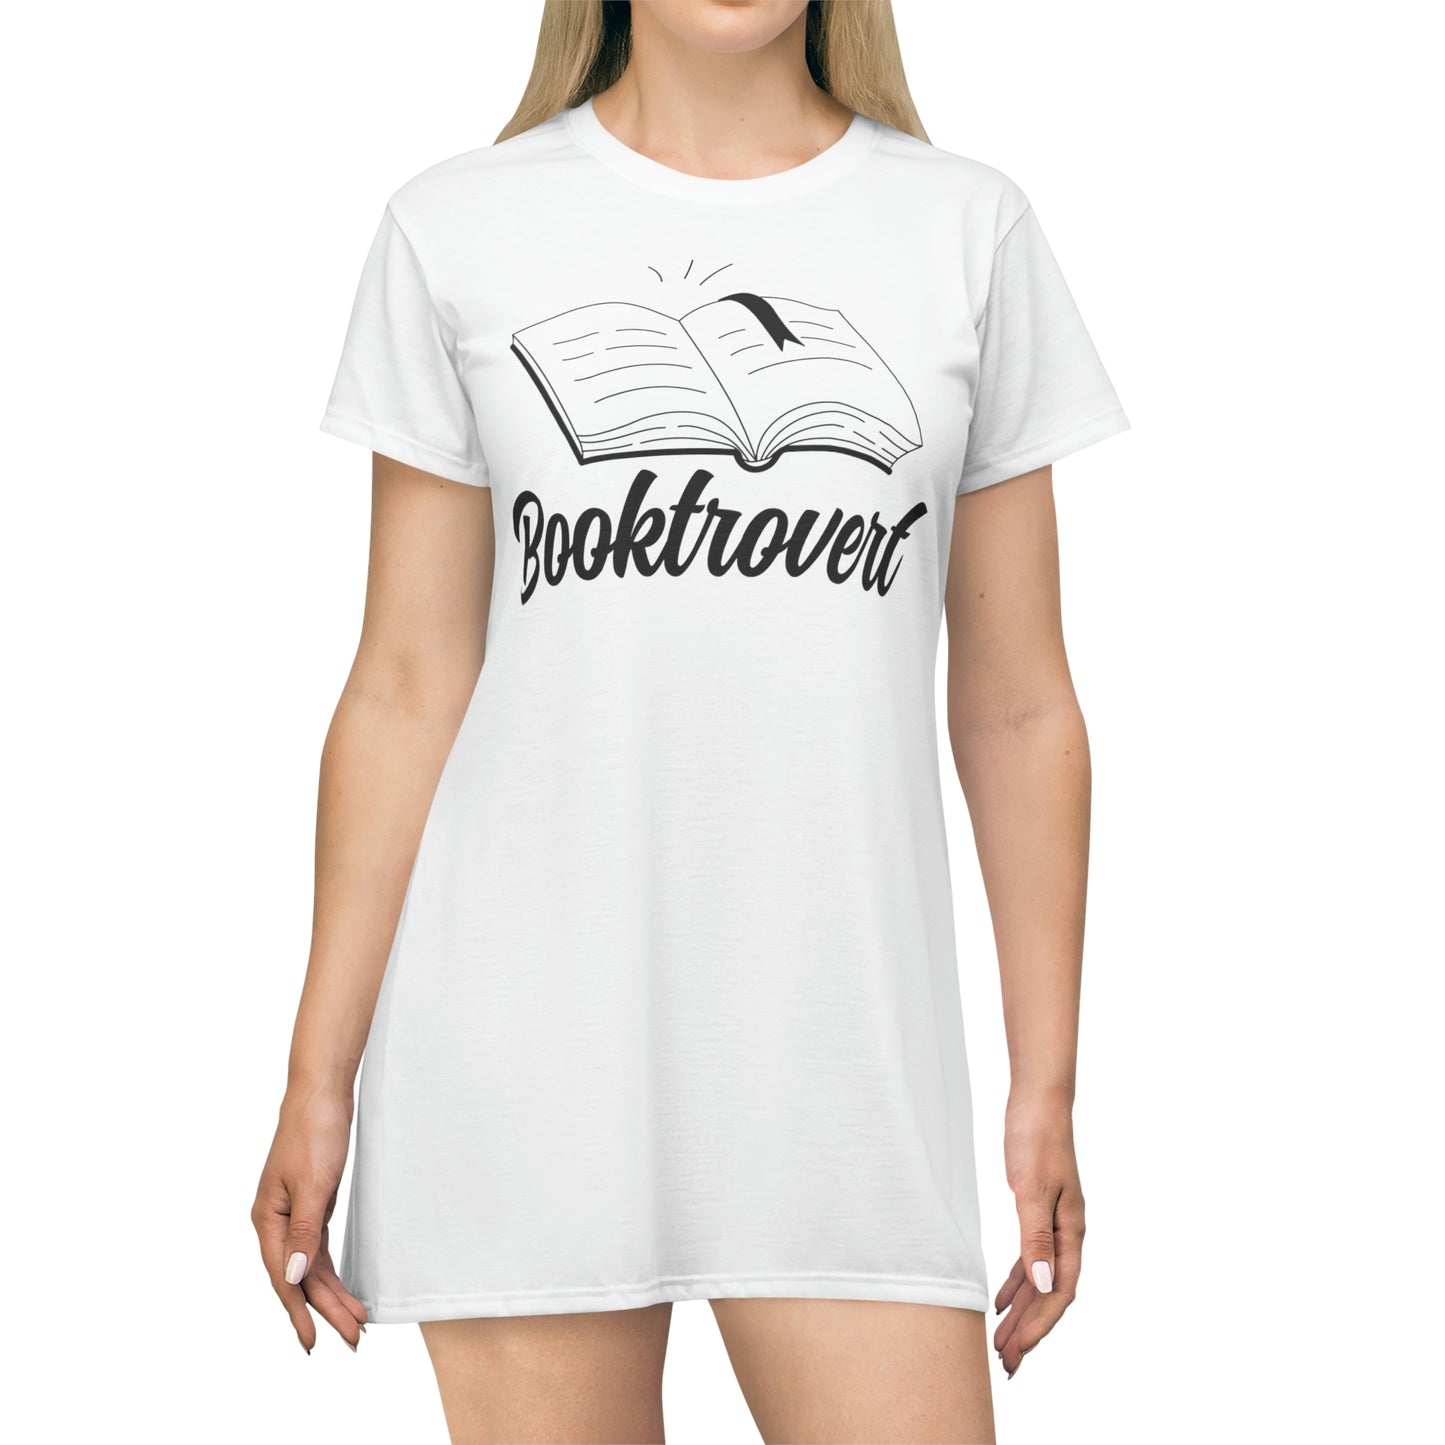 "Booktrovert" T-Shirt Dress